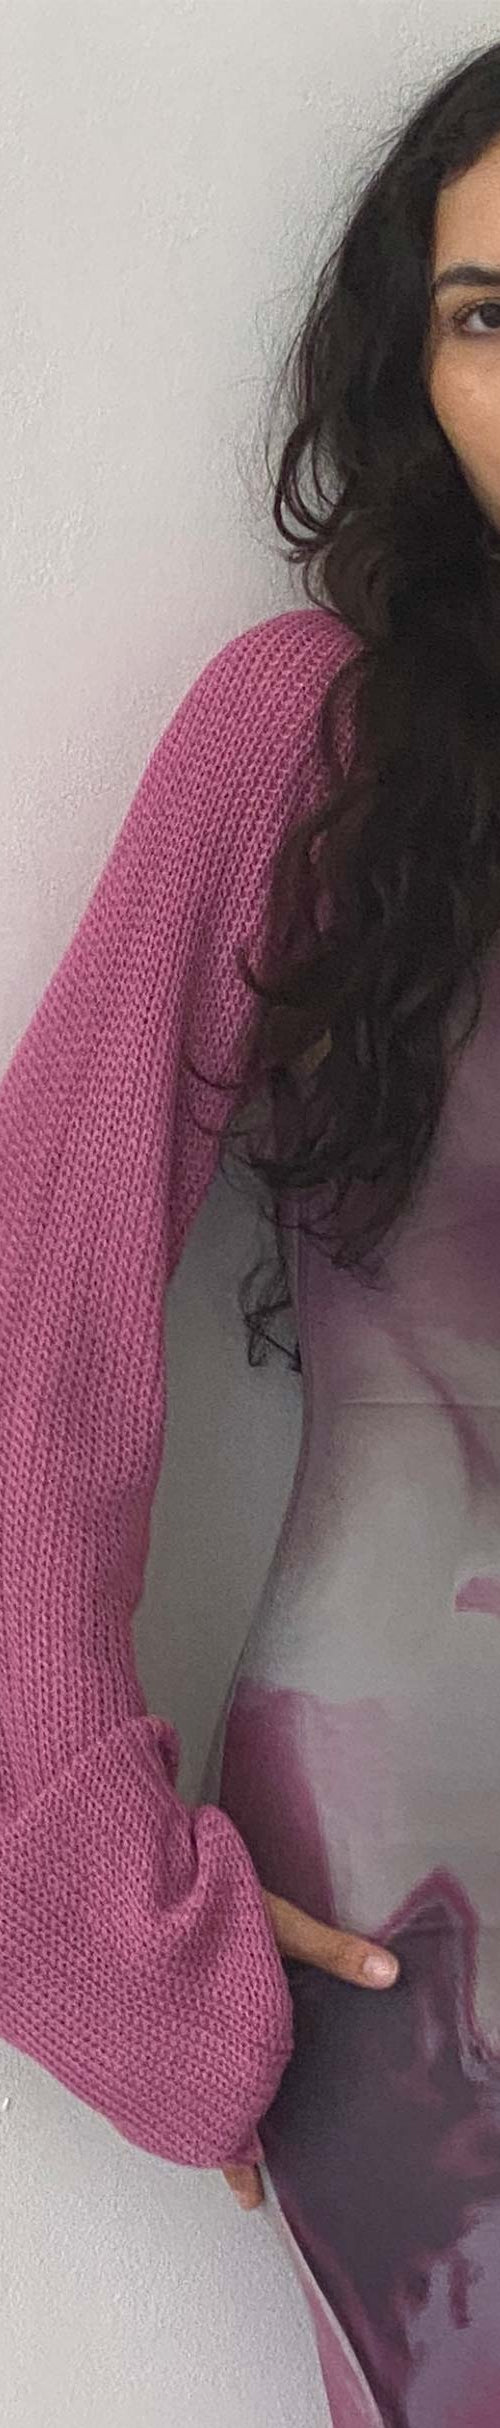 Image of Nobila Shrug Top in Raspberry